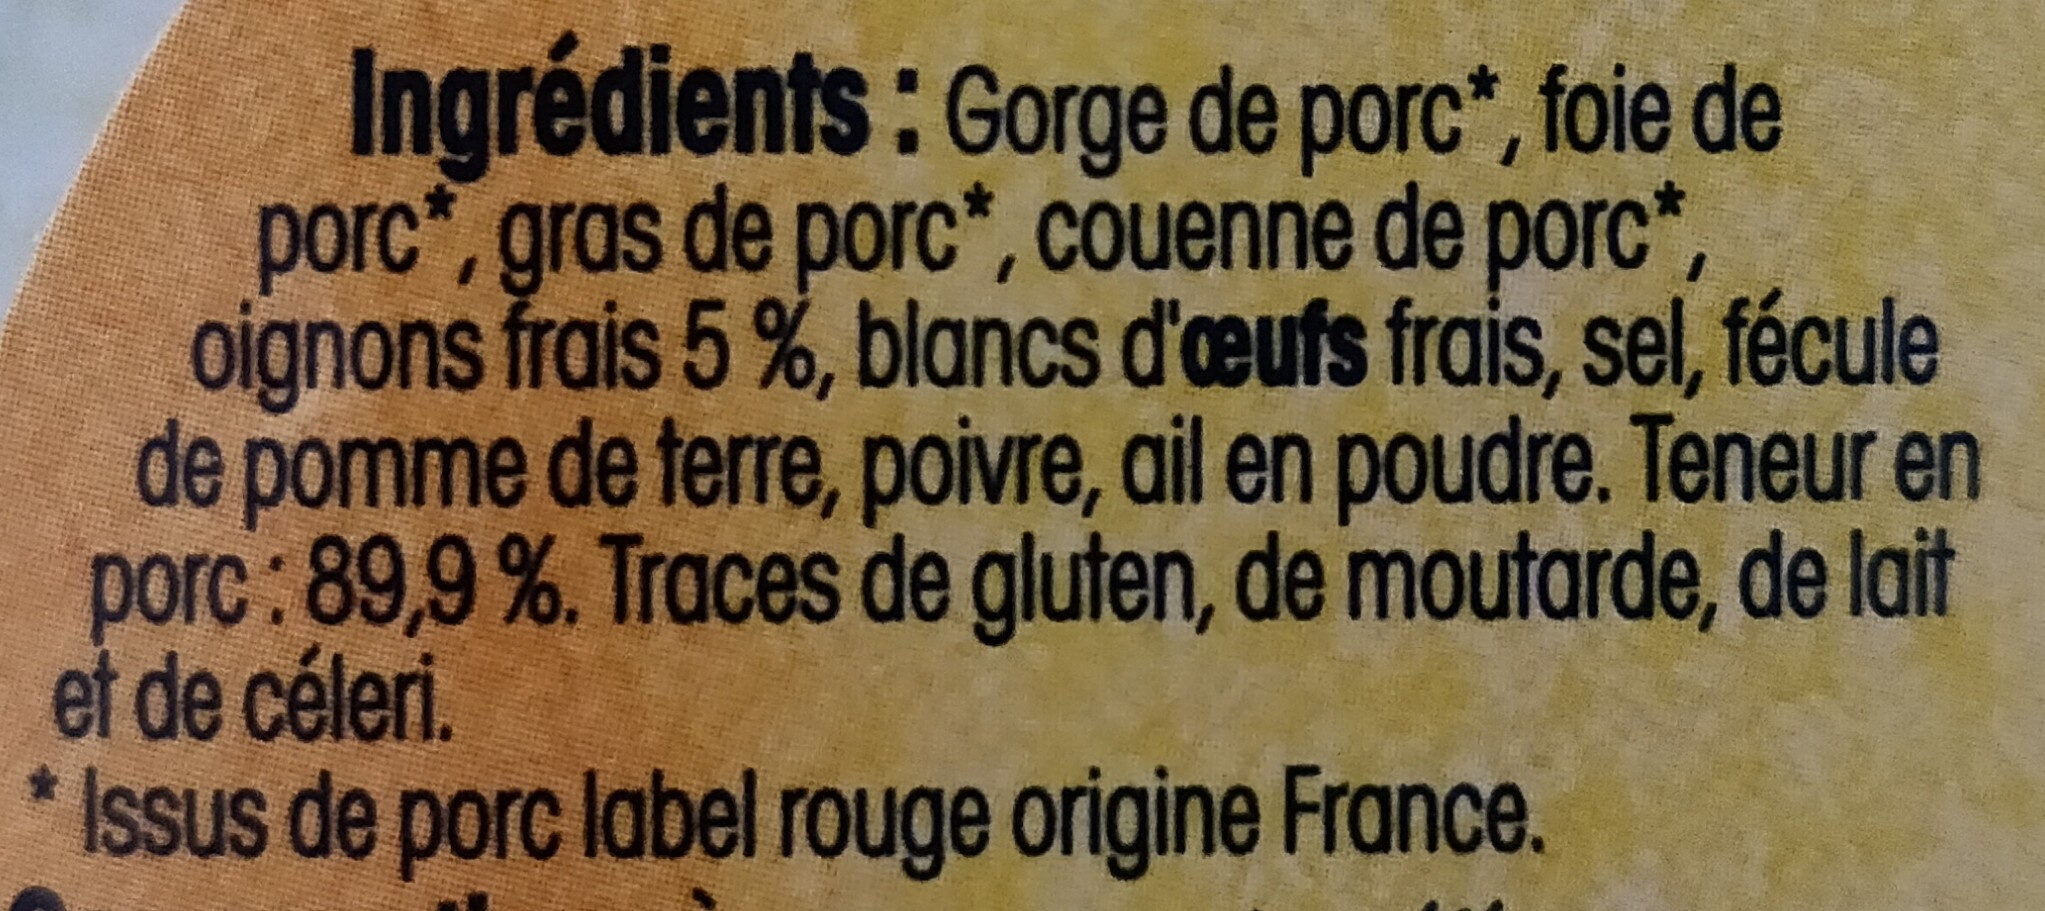 Paté de campagne au porc breton - Ingredients - fr